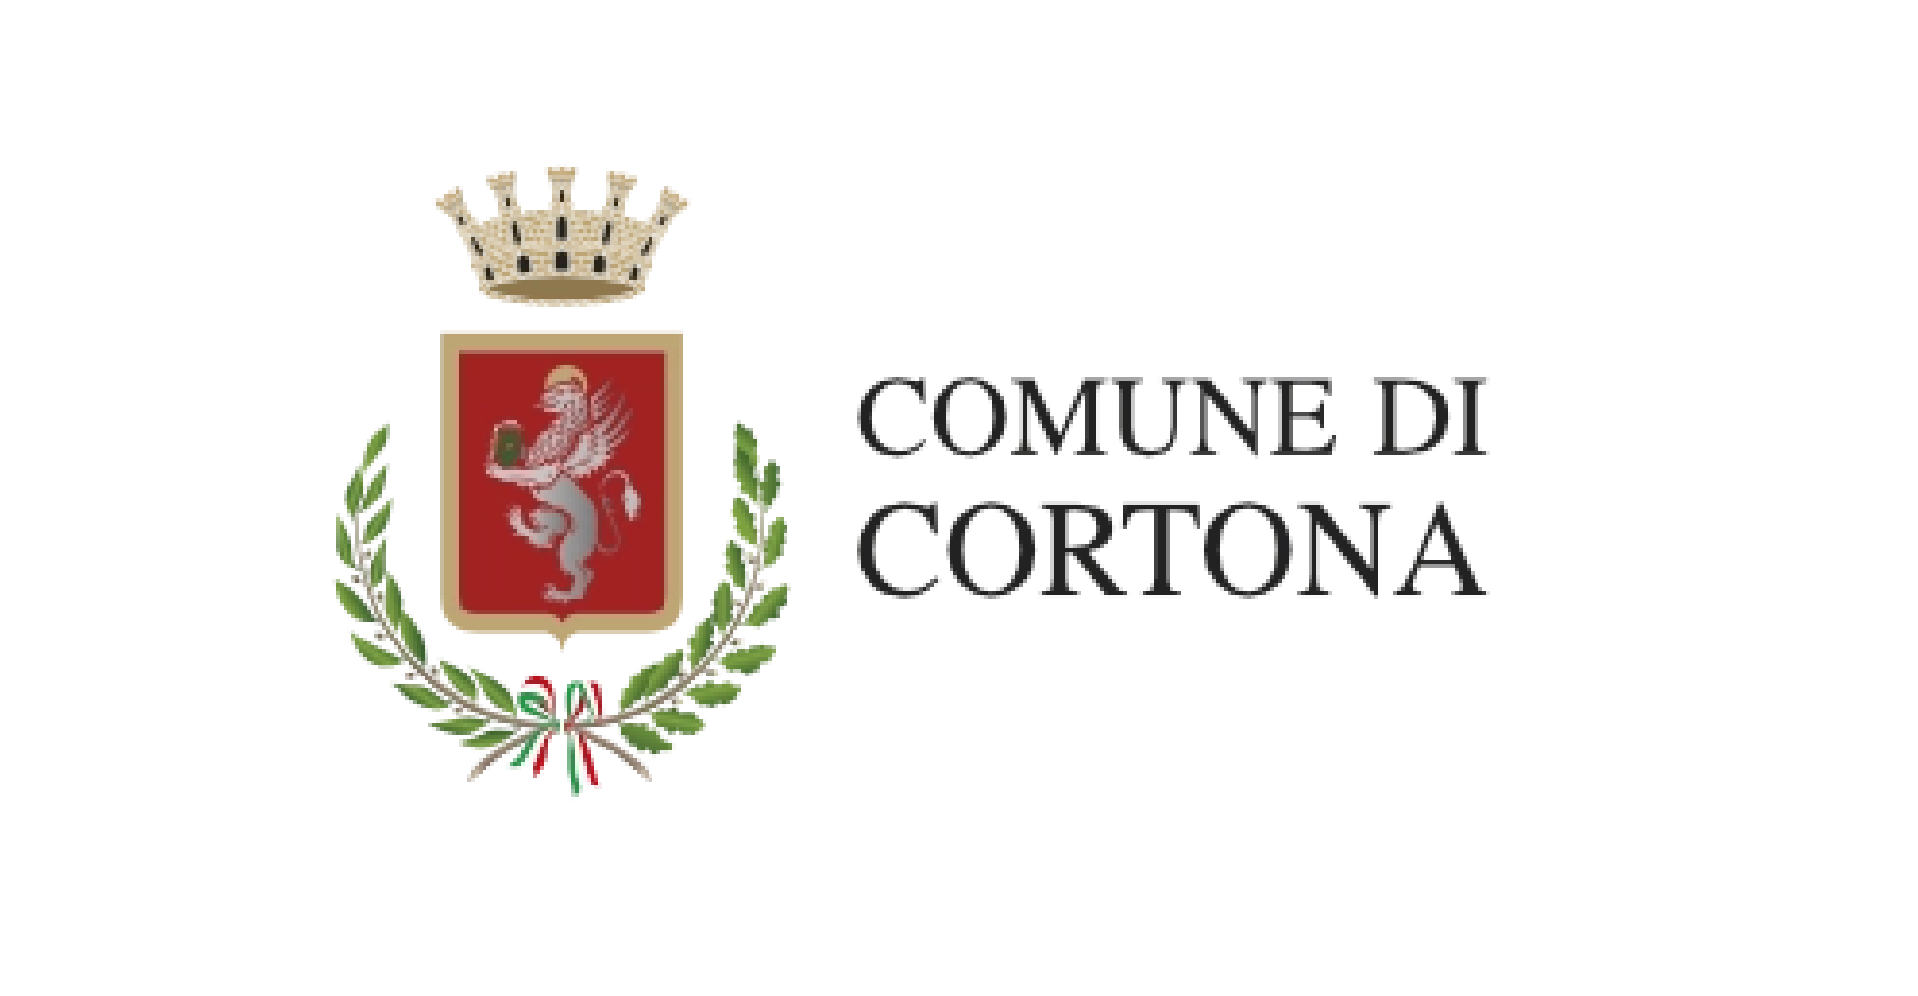 Comune di Cortona